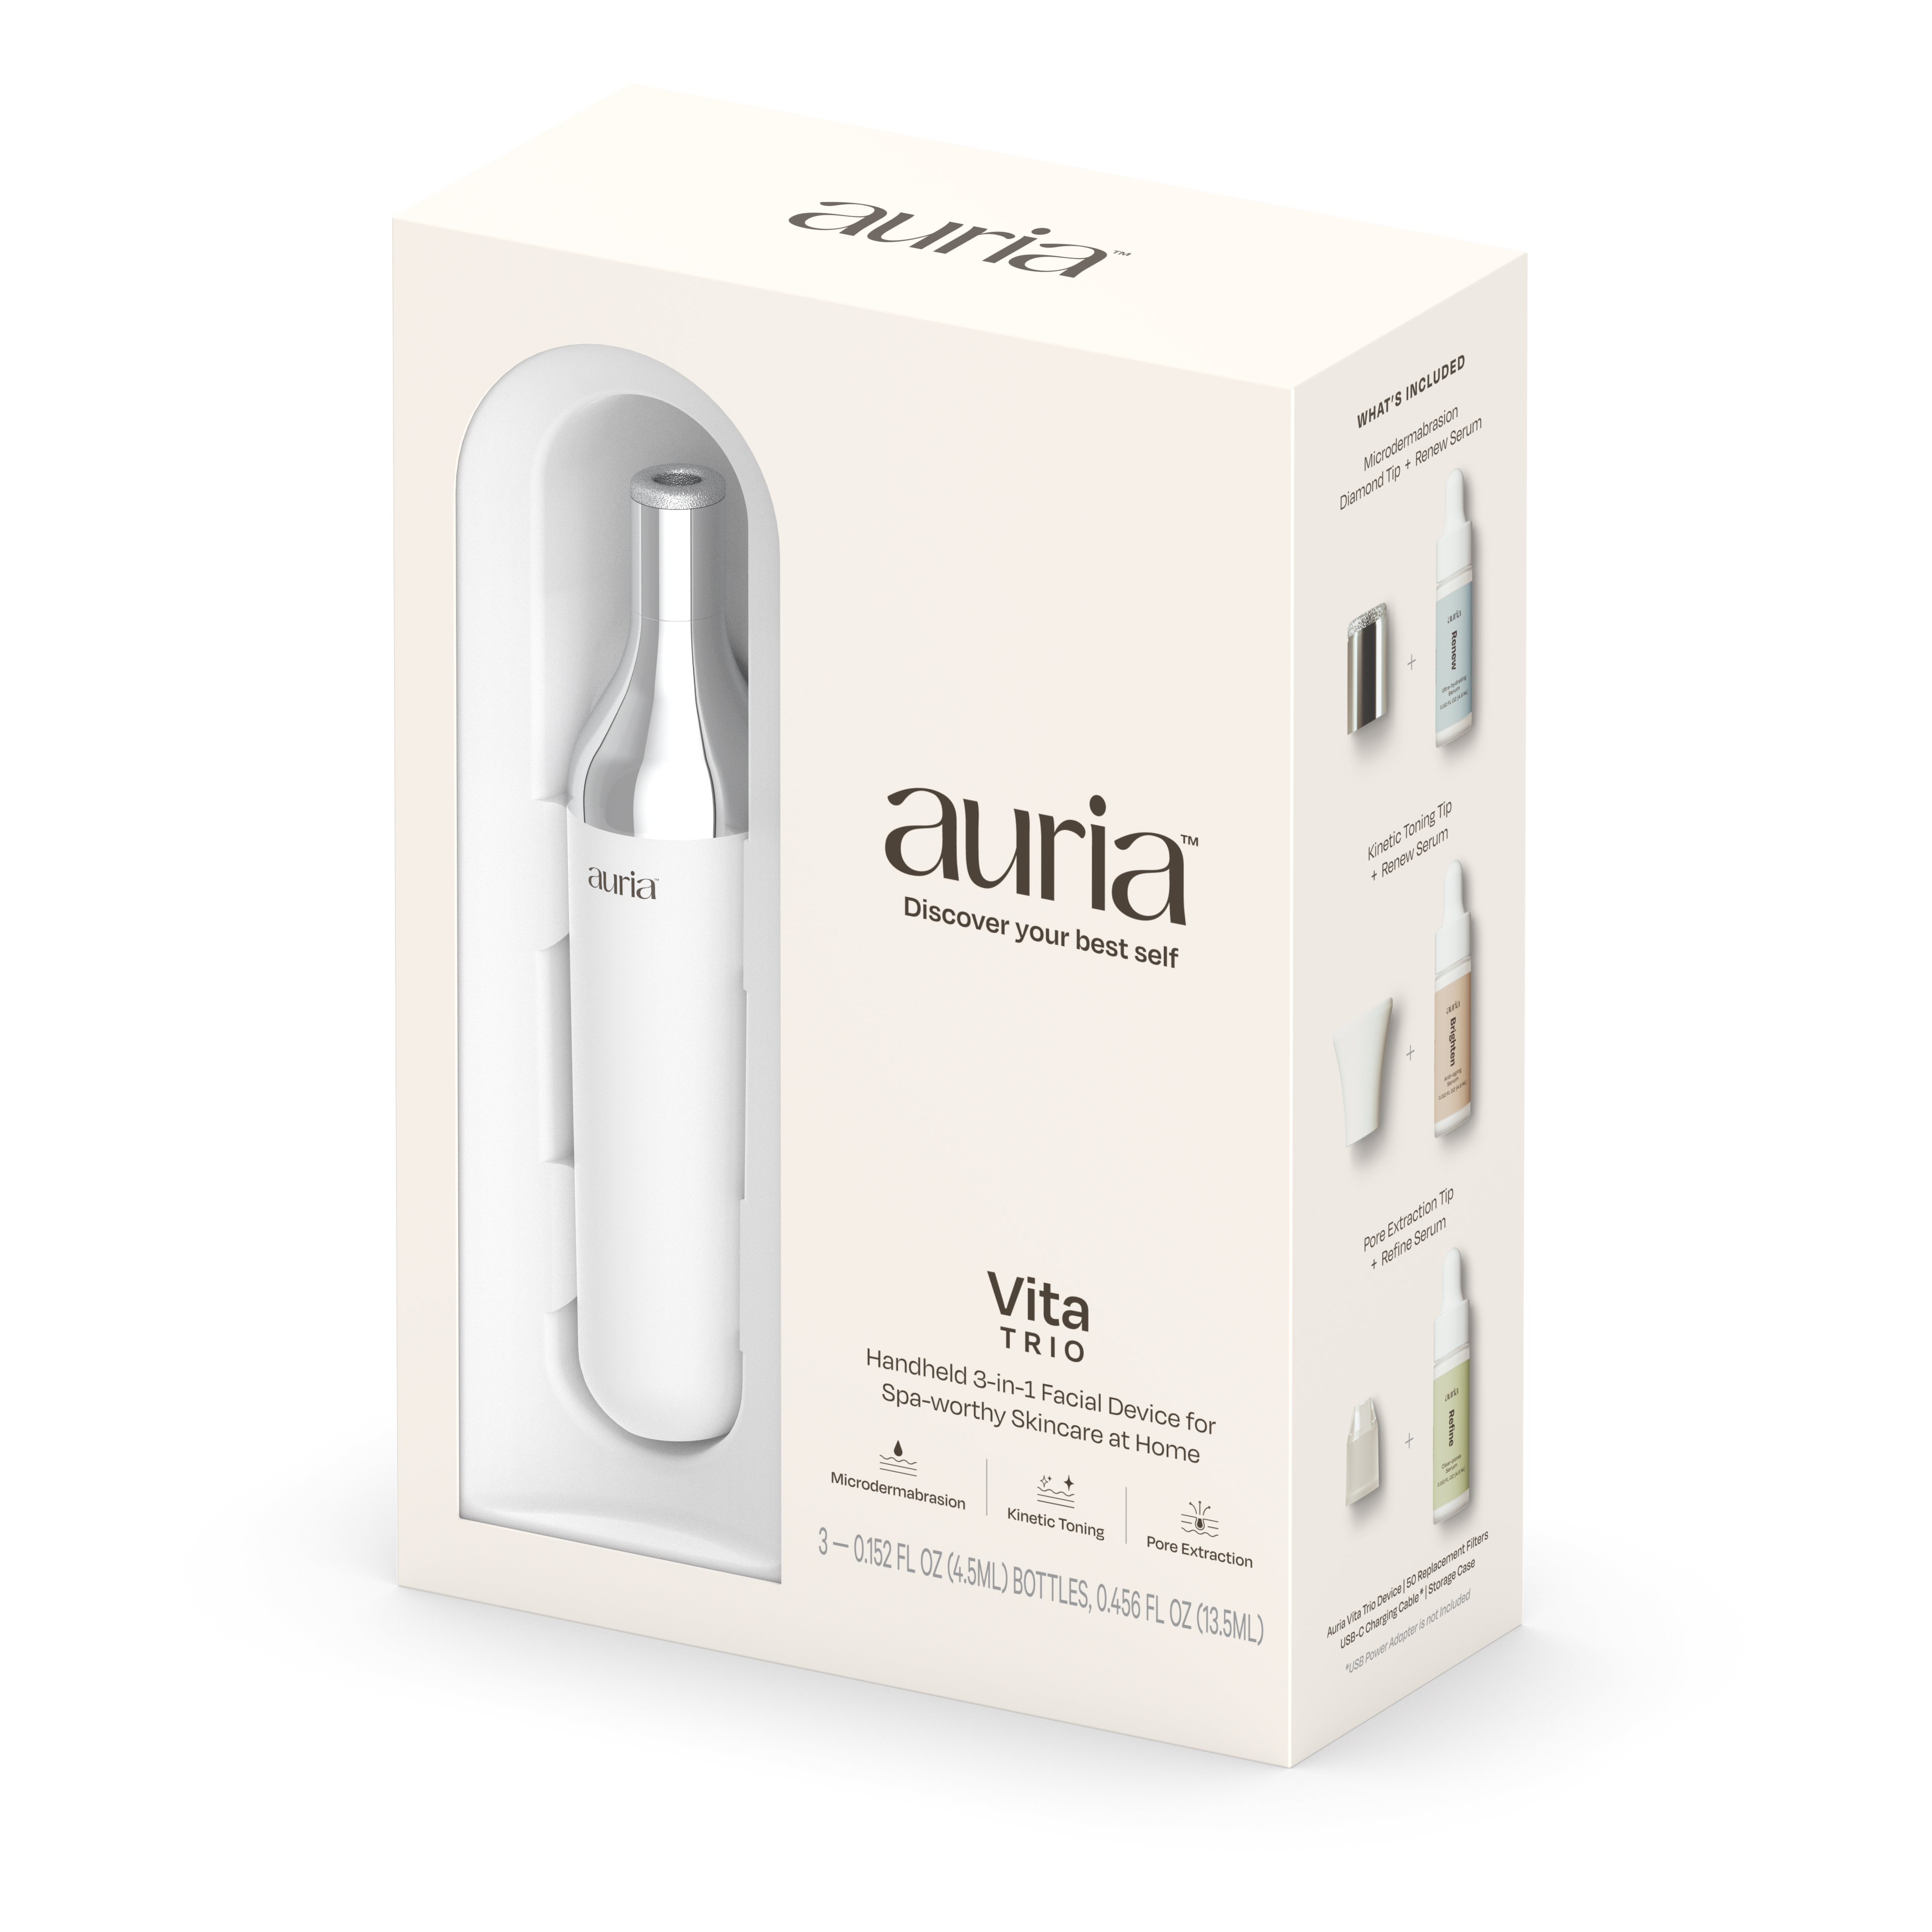 Auria Vita Product Design